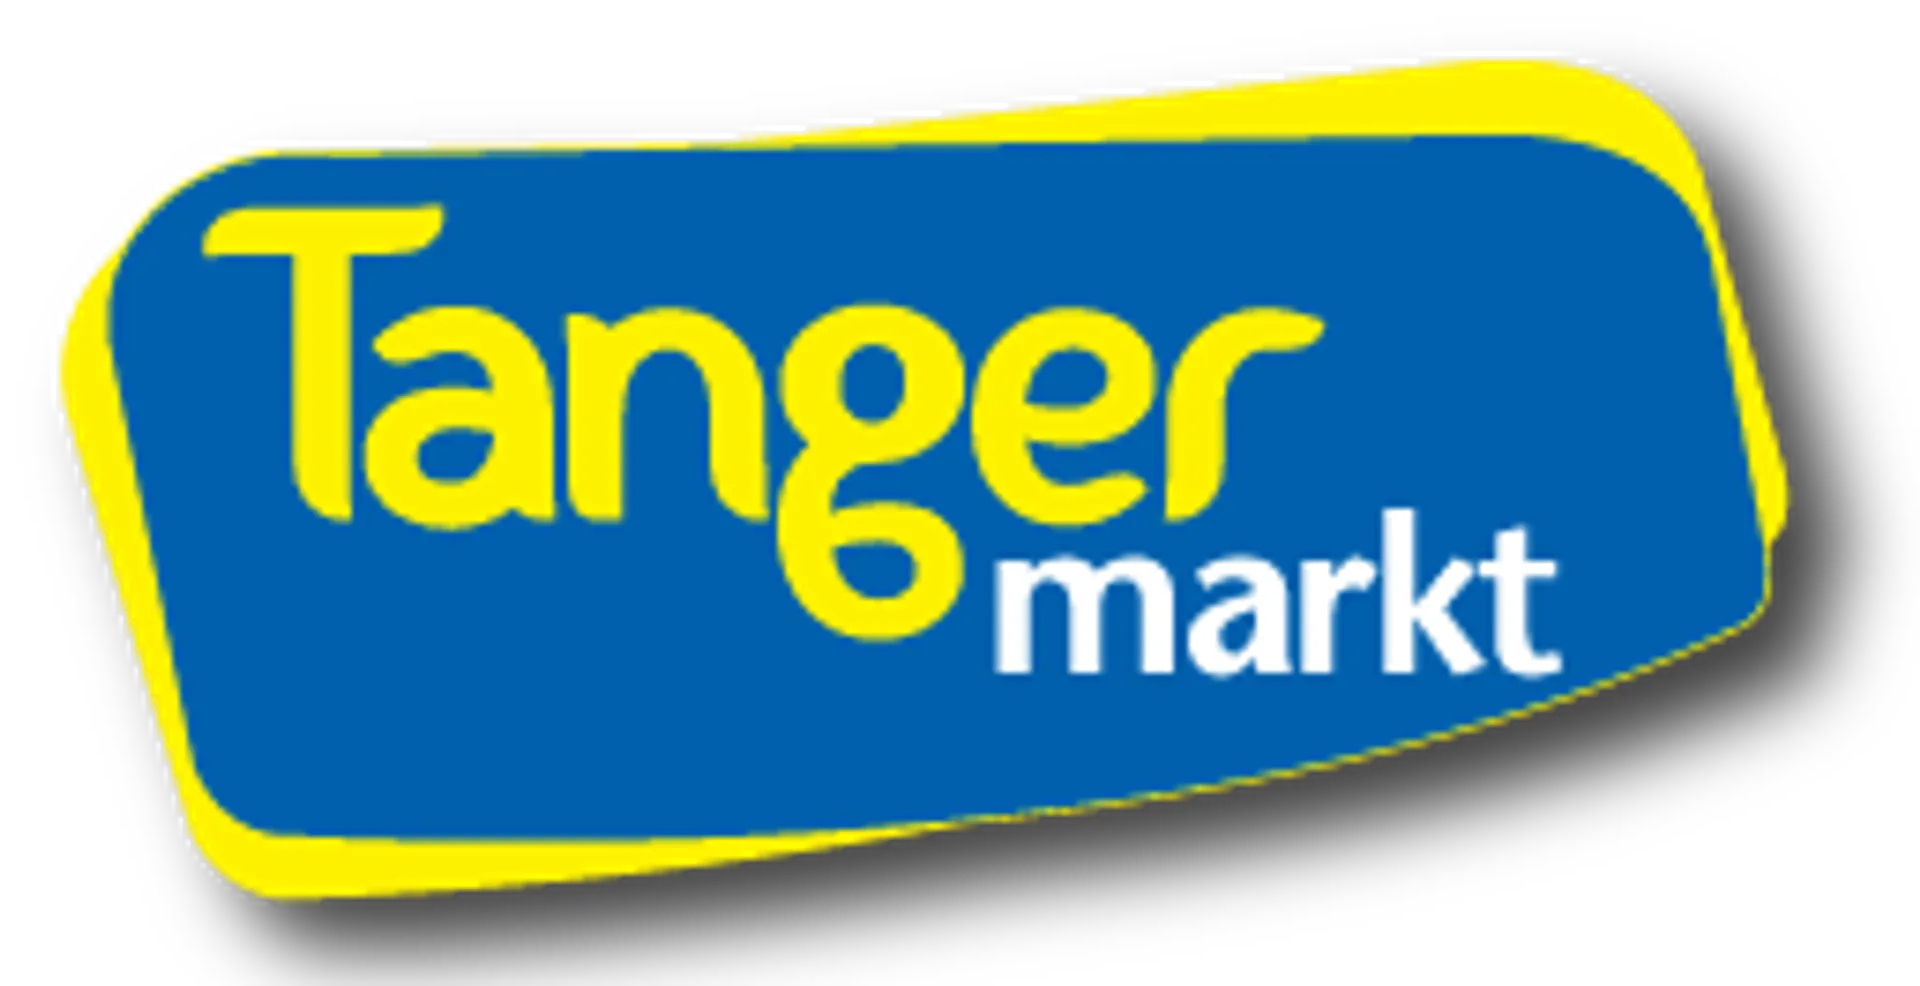 TANGER MARKT logo in de folder van deze week